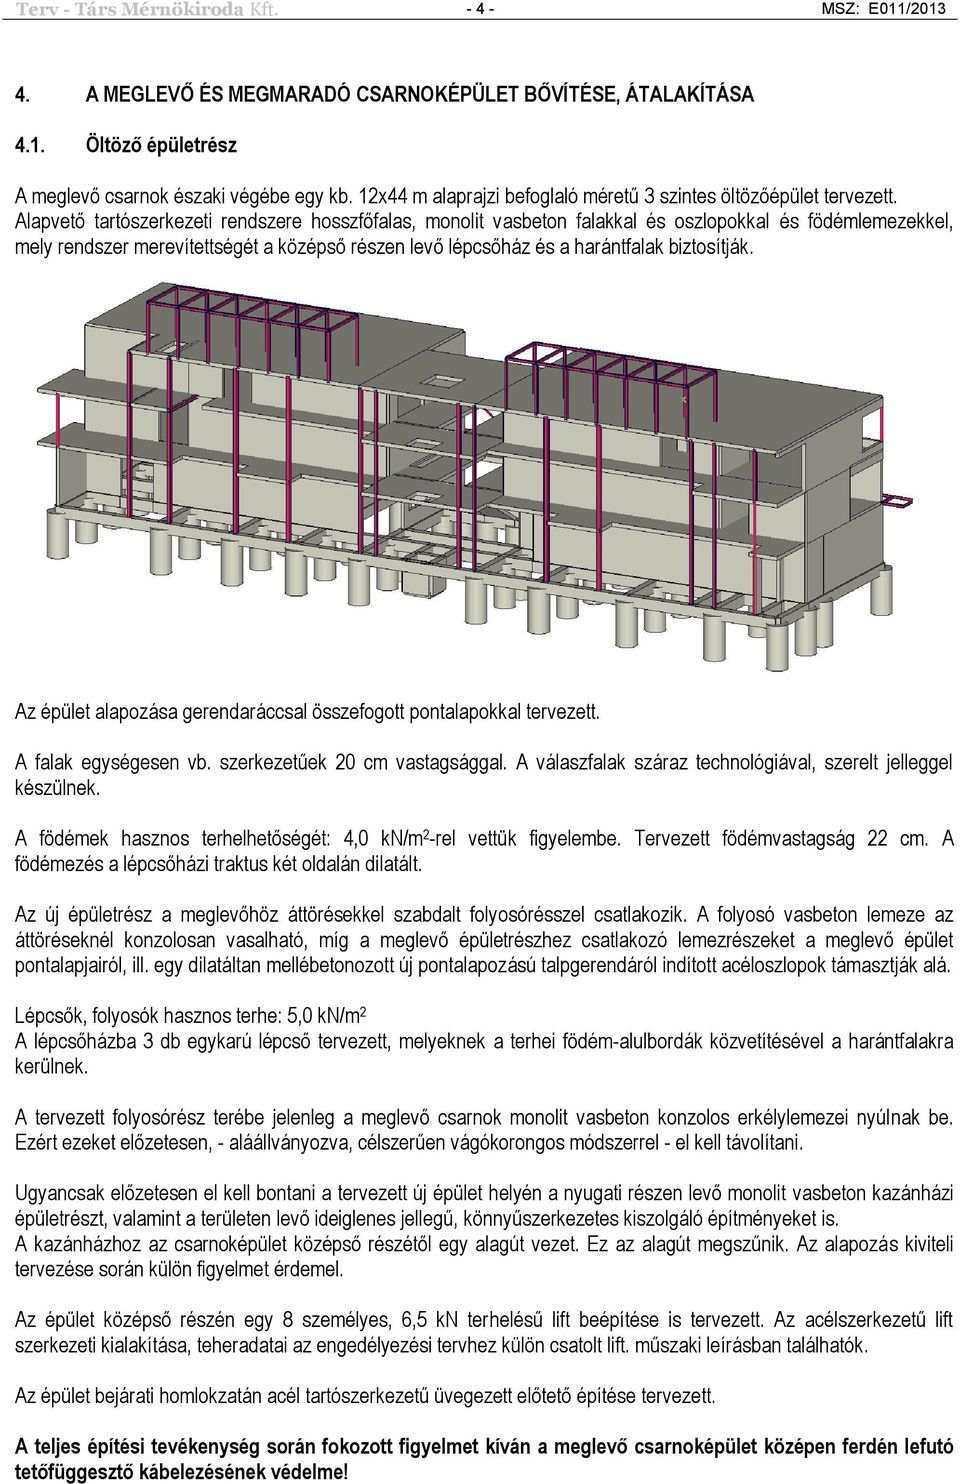 Alapvető tartószerkezeti rendszere hosszfőfalas, monolit vasbeton falakkal és oszlopokkal és födémlemezekkel, mely rendszer merevítettségét a középső részen levő lépcsőház és a harántfalak